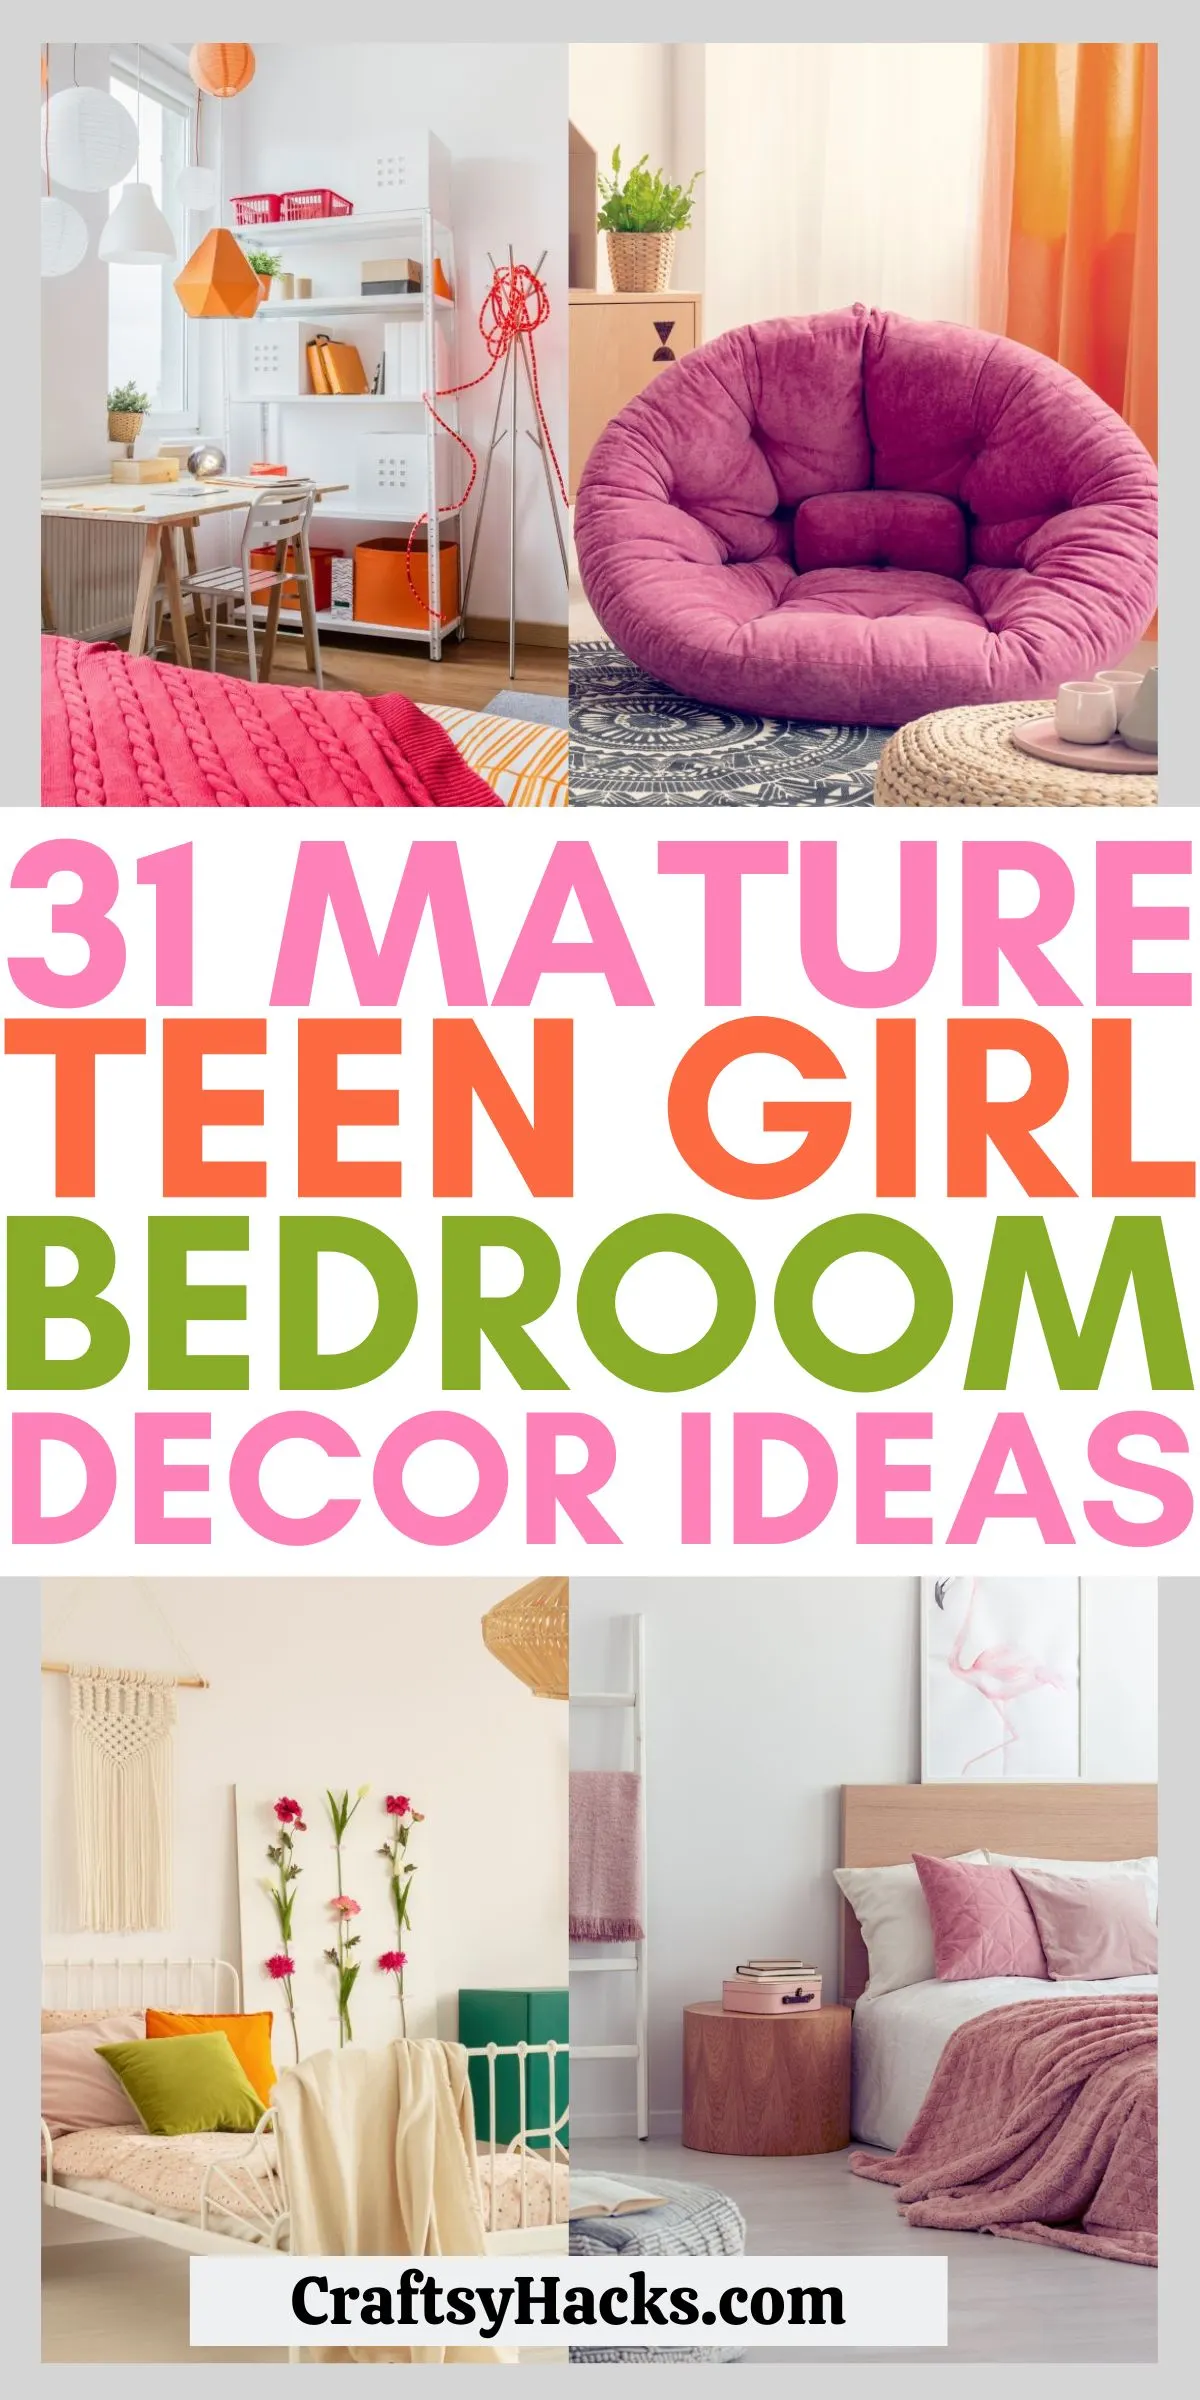 31 mature teenage girl bedroom ideas - craftsy hacks